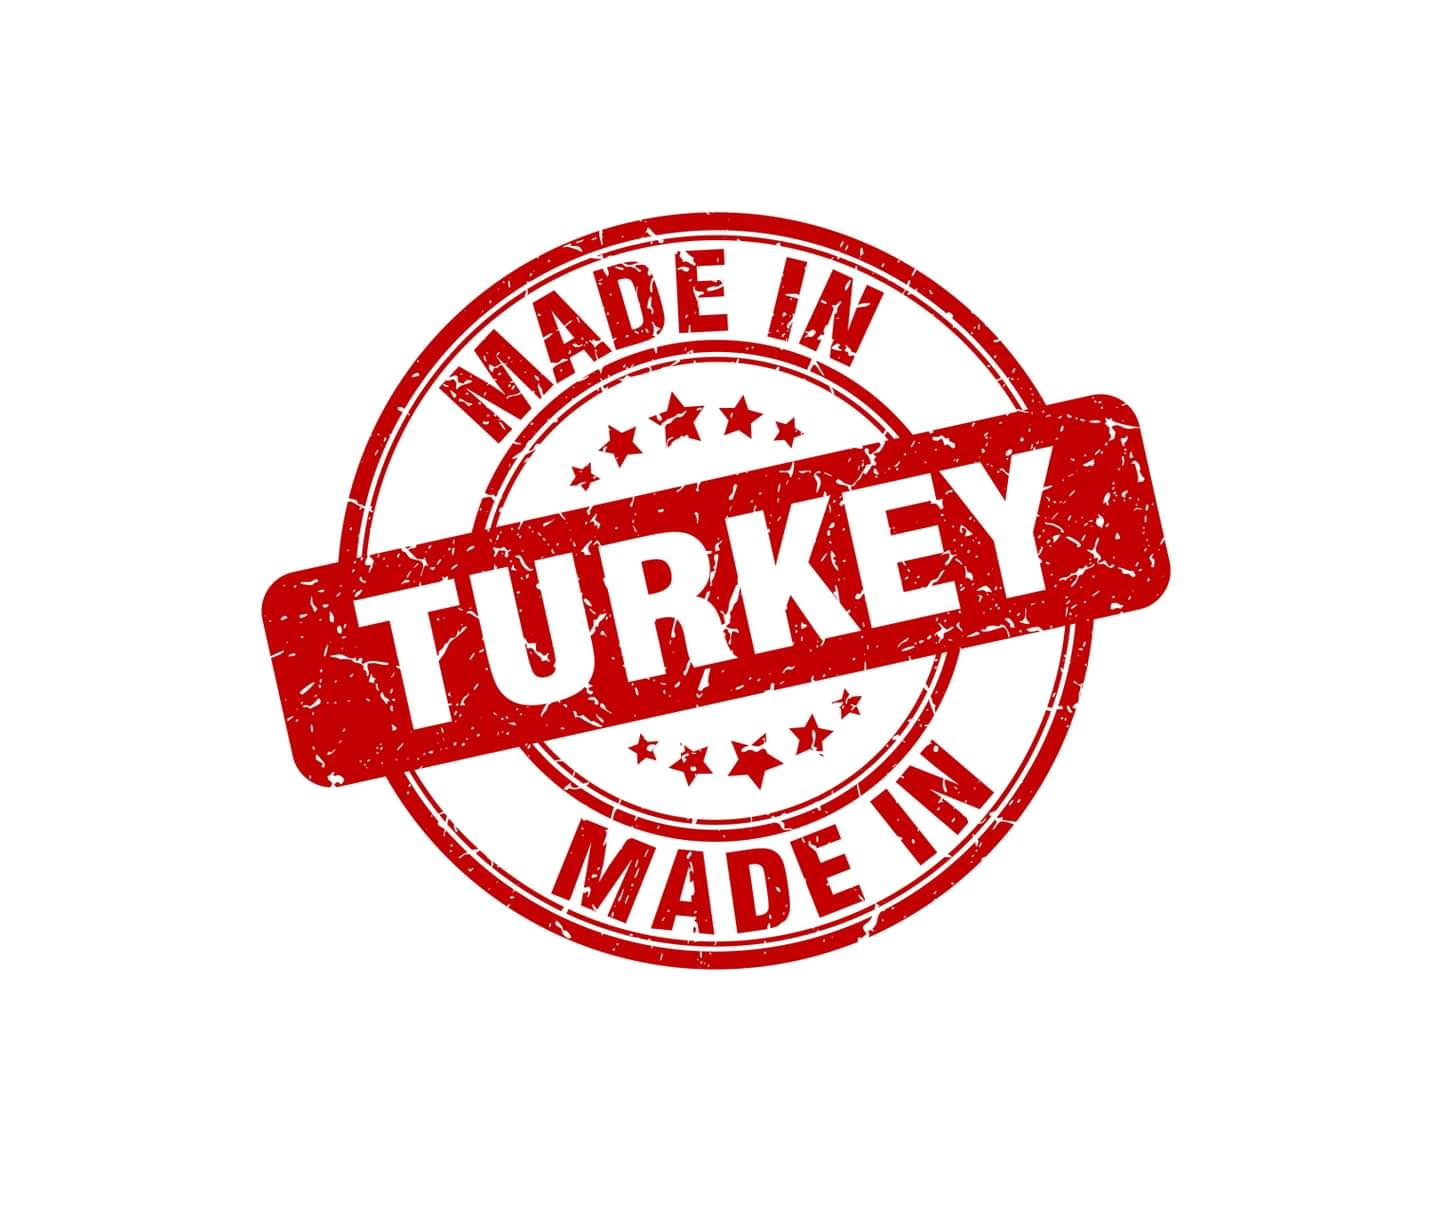 Թուրքական ծագումով ապրանքների ներմուծման մասին նոր որոշում կկայացվի. Ժողովուրդ